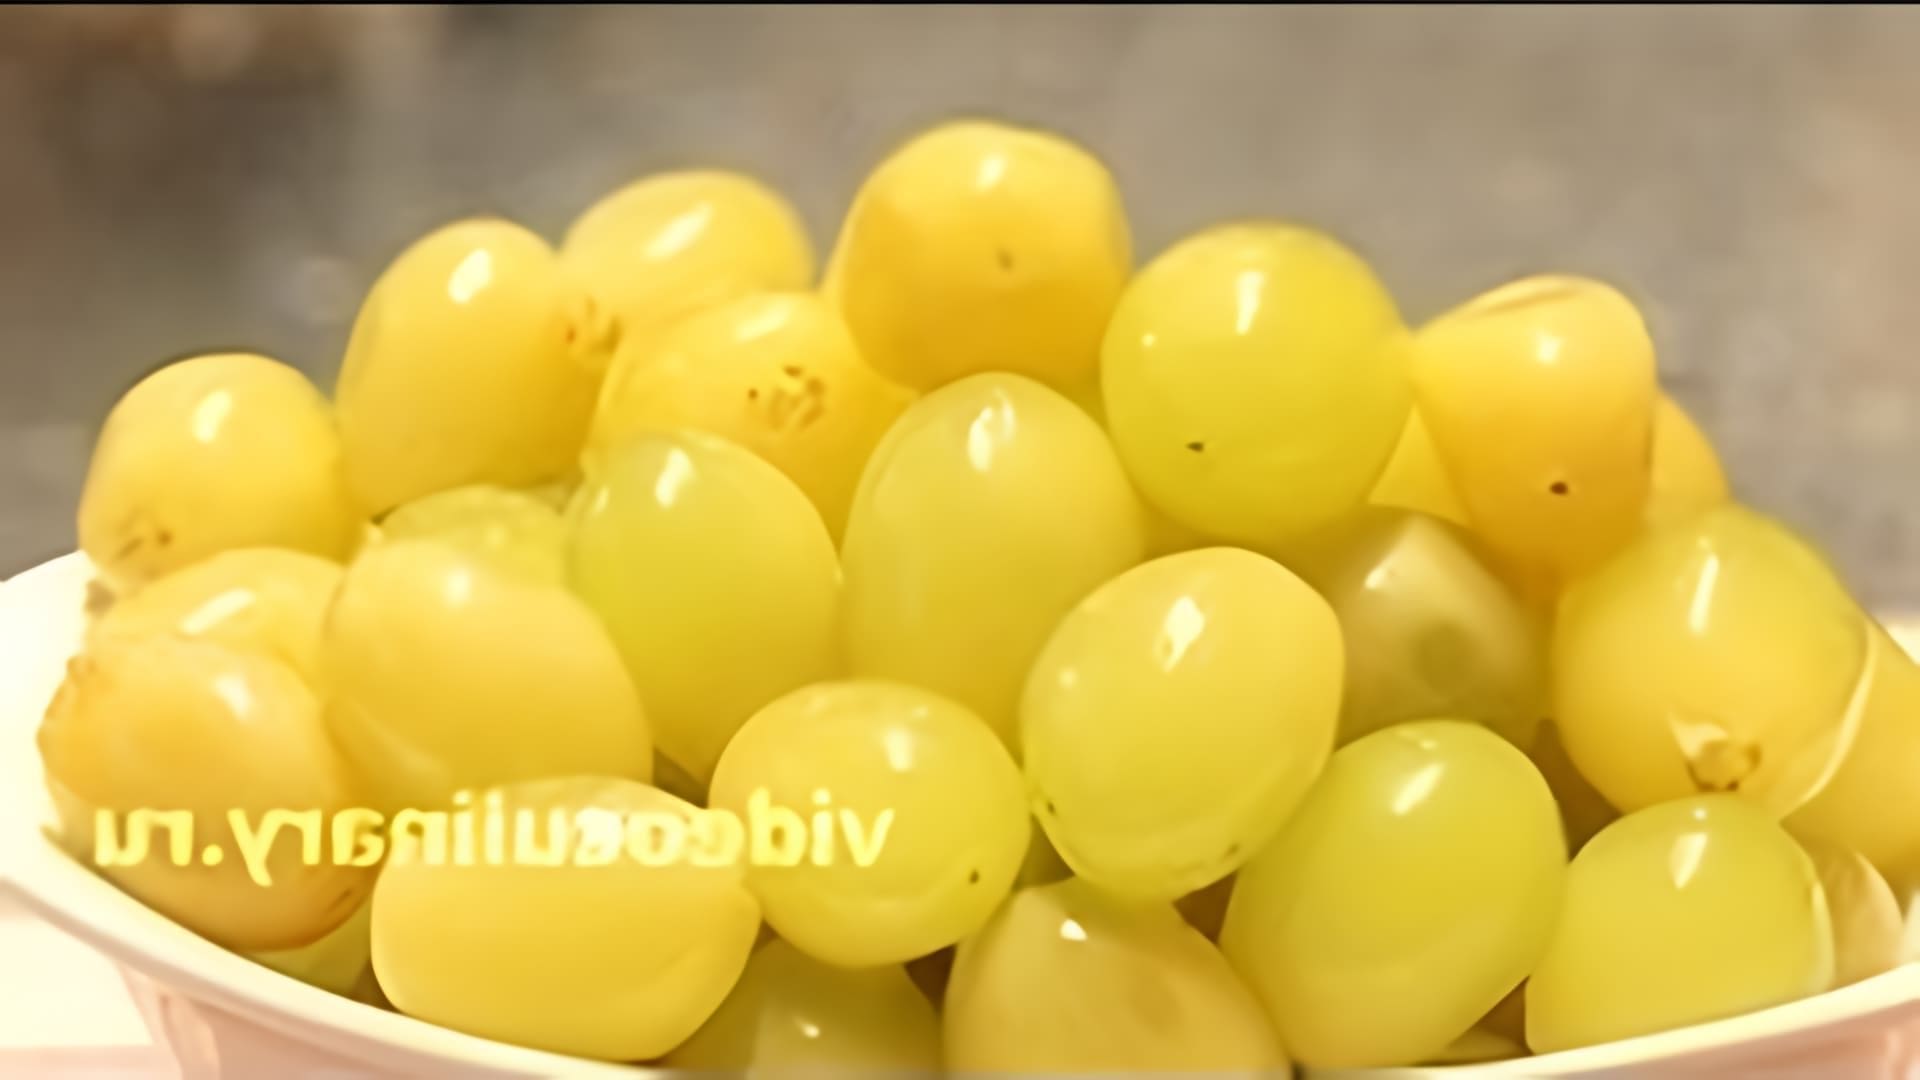 В этом видео демонстрируется процесс маринования белого винограда по рецепту Бабушки Эммы